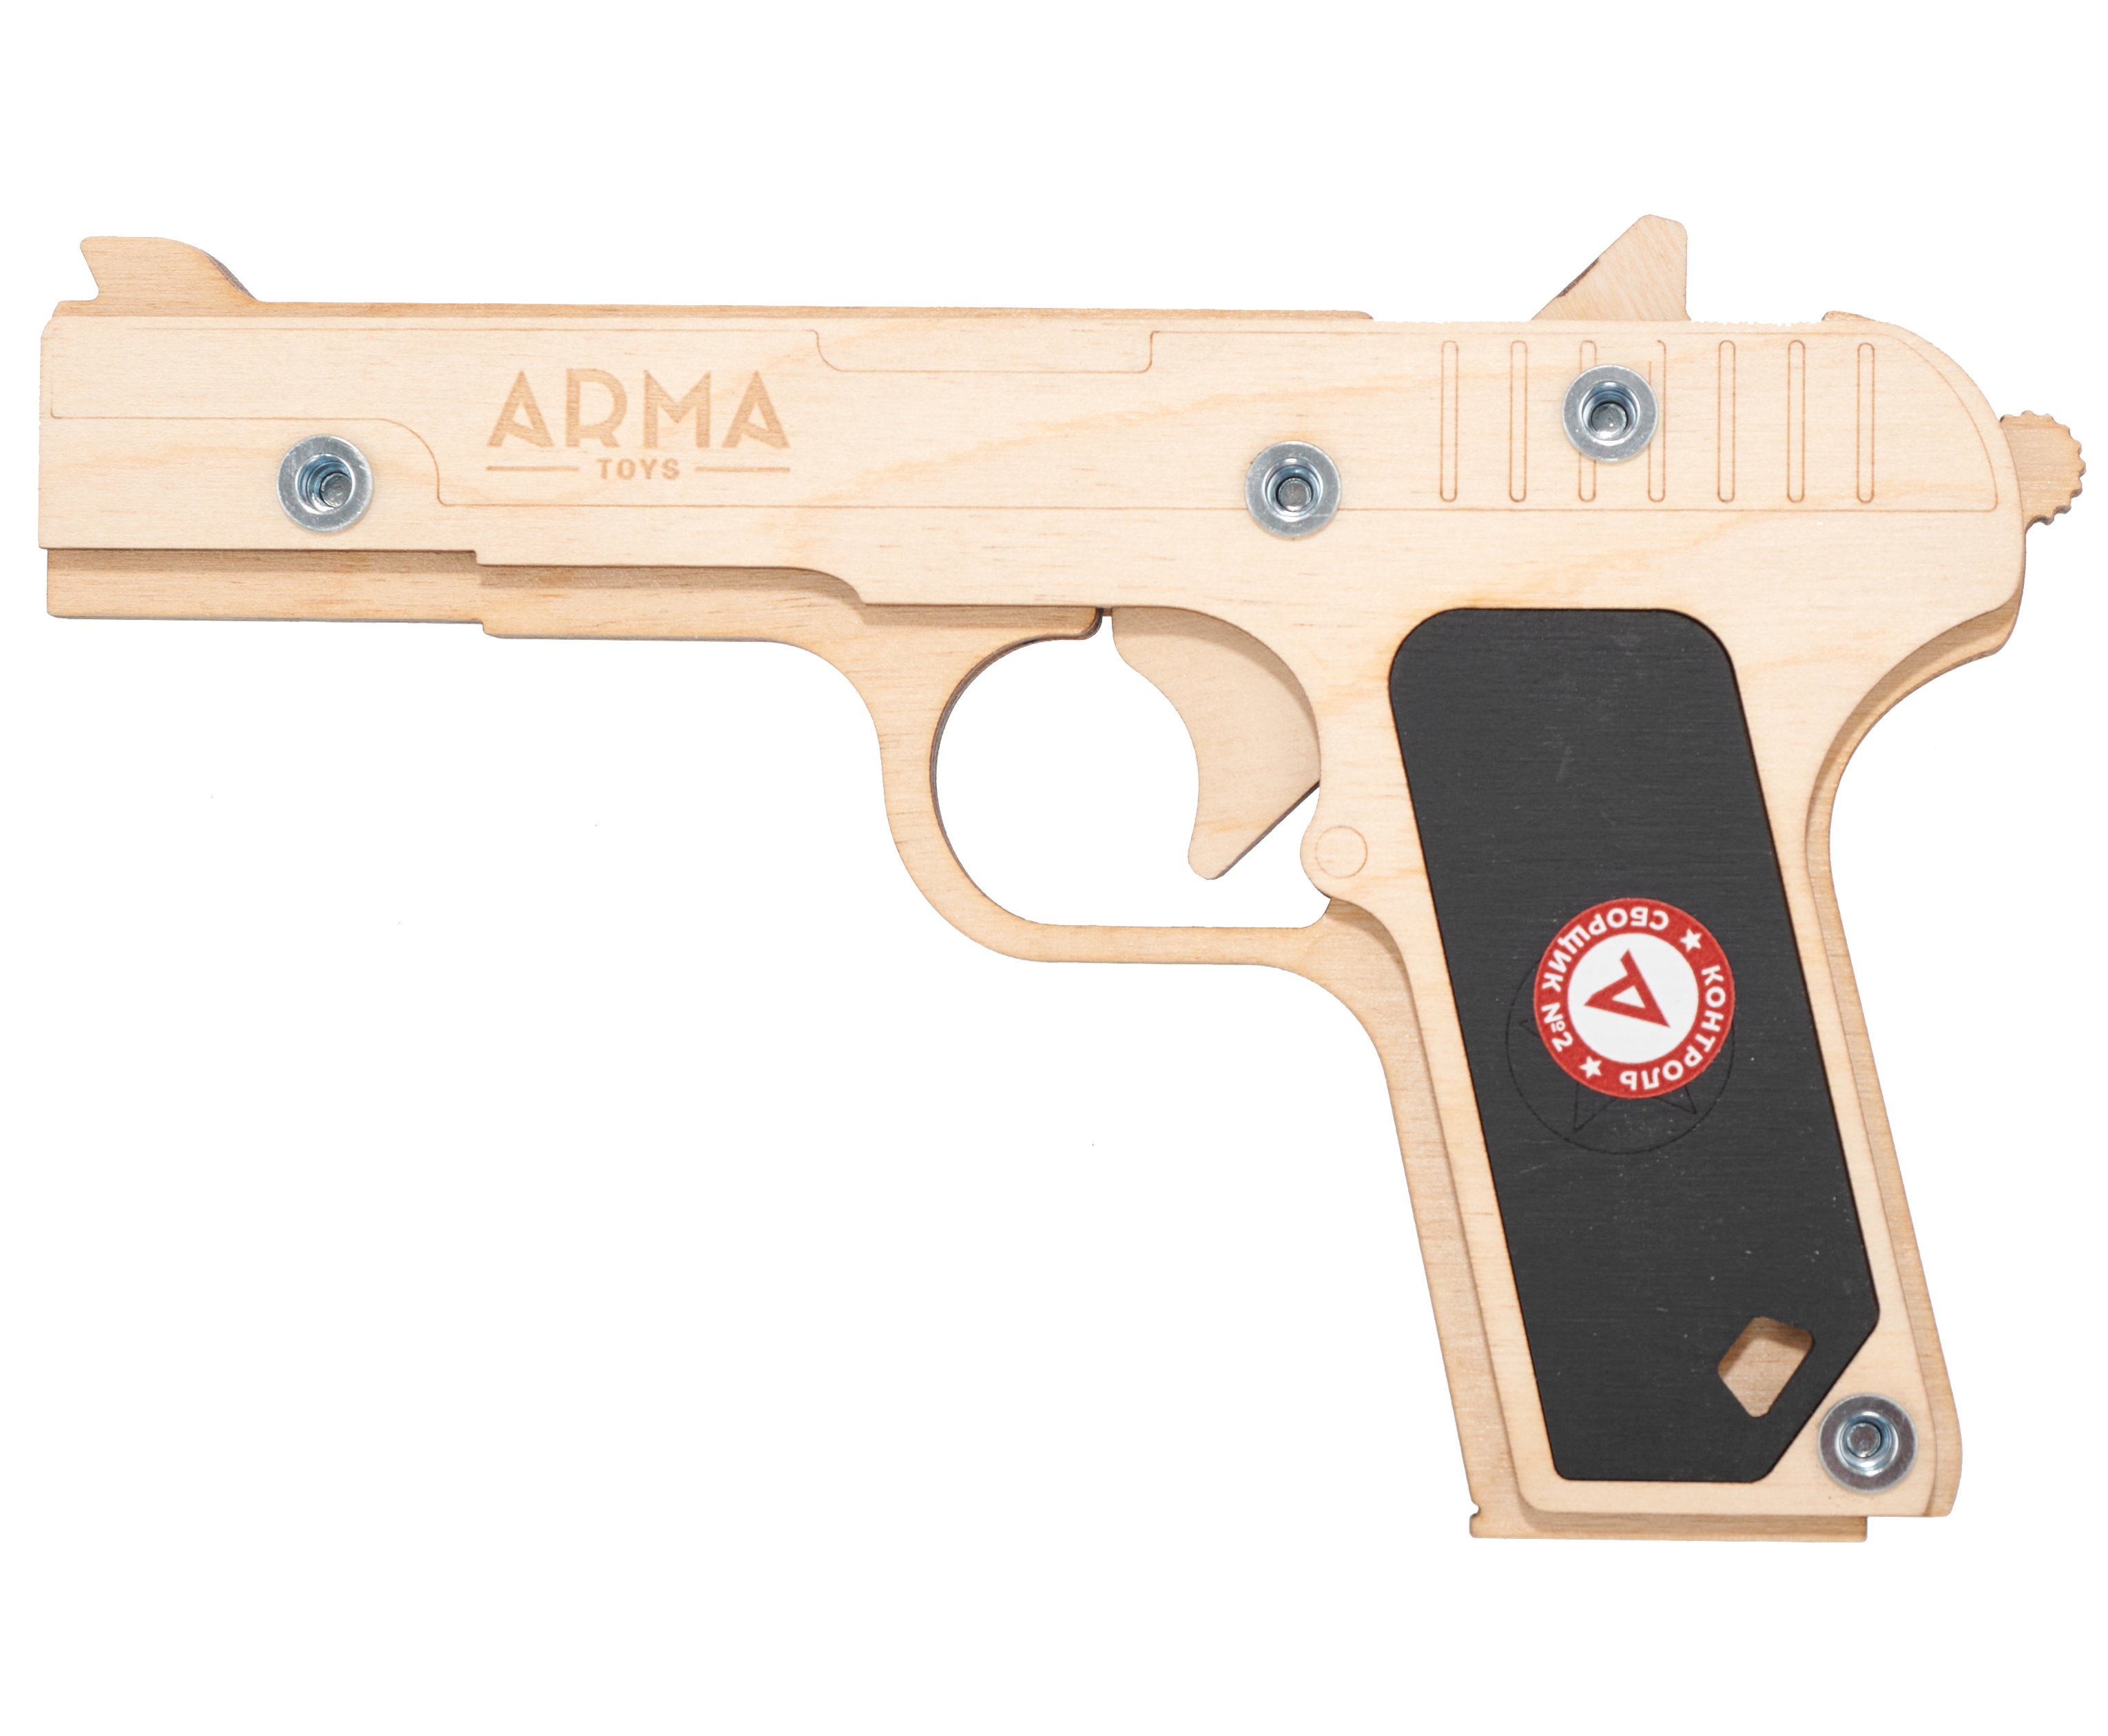 Резинкострел игрушечный Arma toys пистолет ТТ Компакт макет, Токарев, ATL002 резинкострел игрушечный arma toys пистолет глок макет glock at013